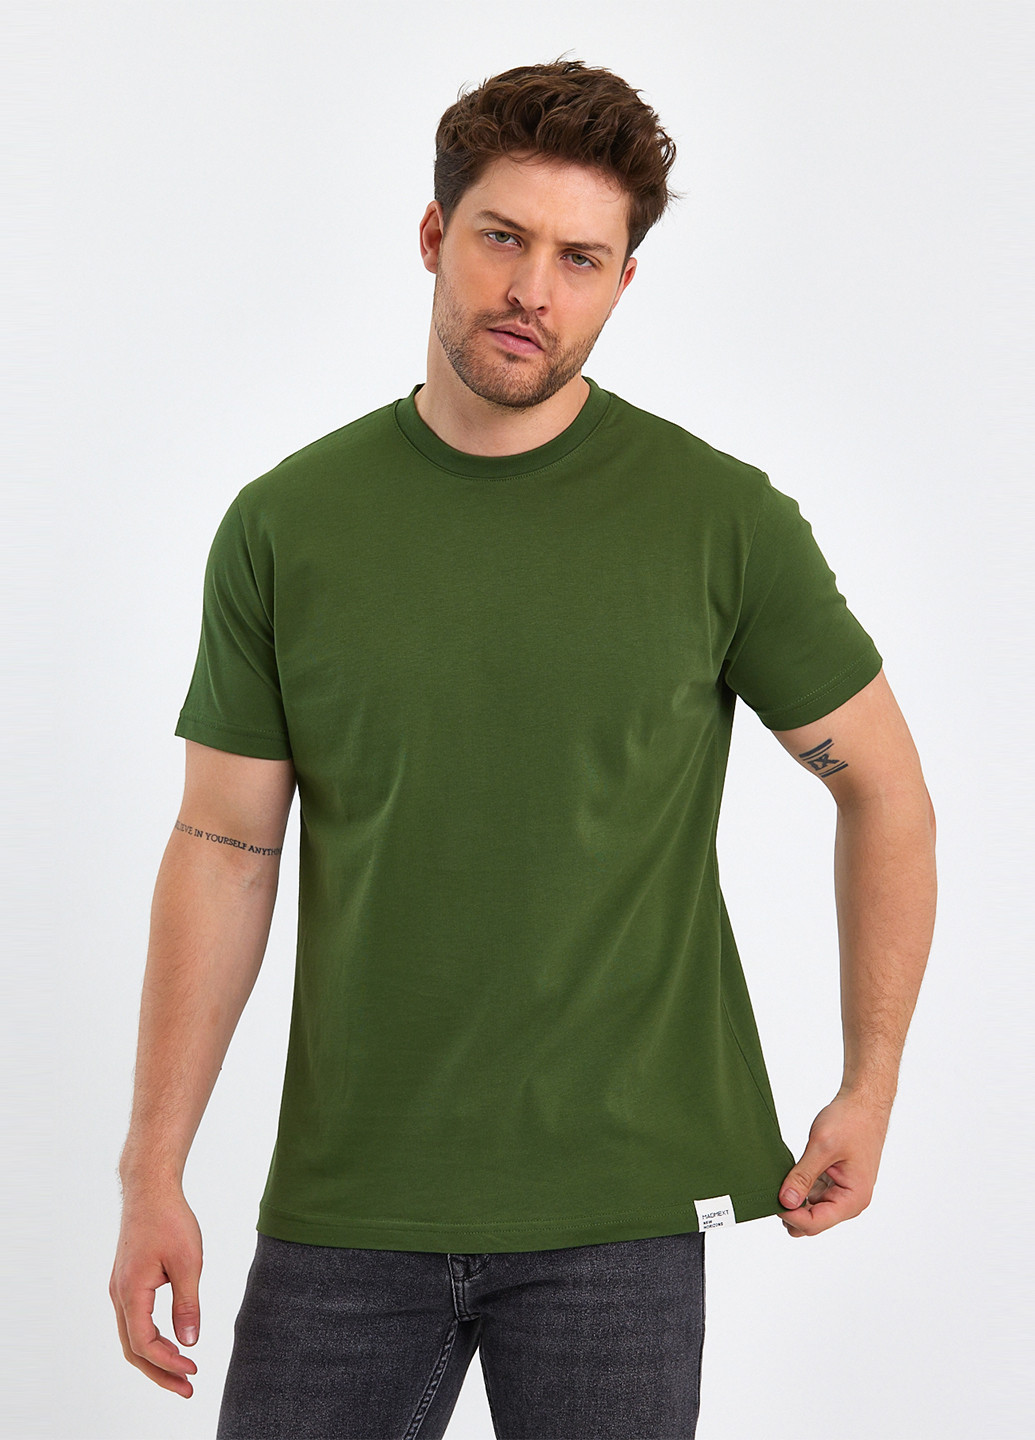 Оливковая футболка Trend Collection